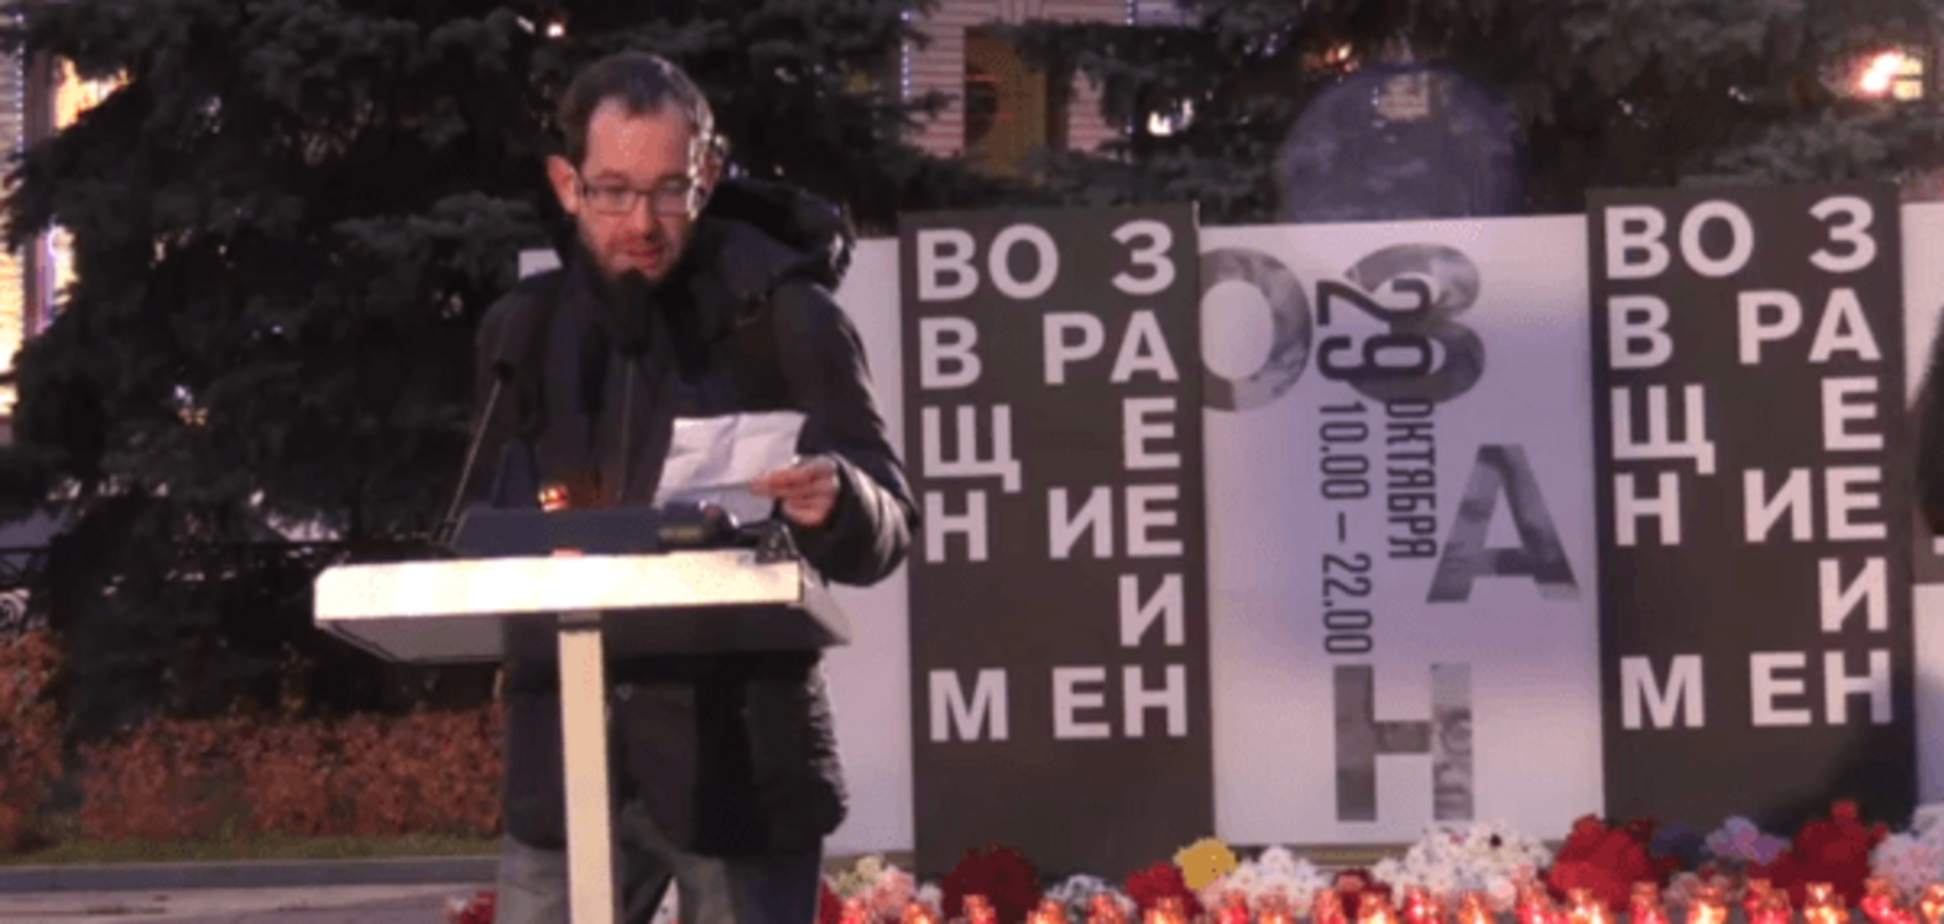 Символічно: в путінській Росії згадали про жертв сталінського терору